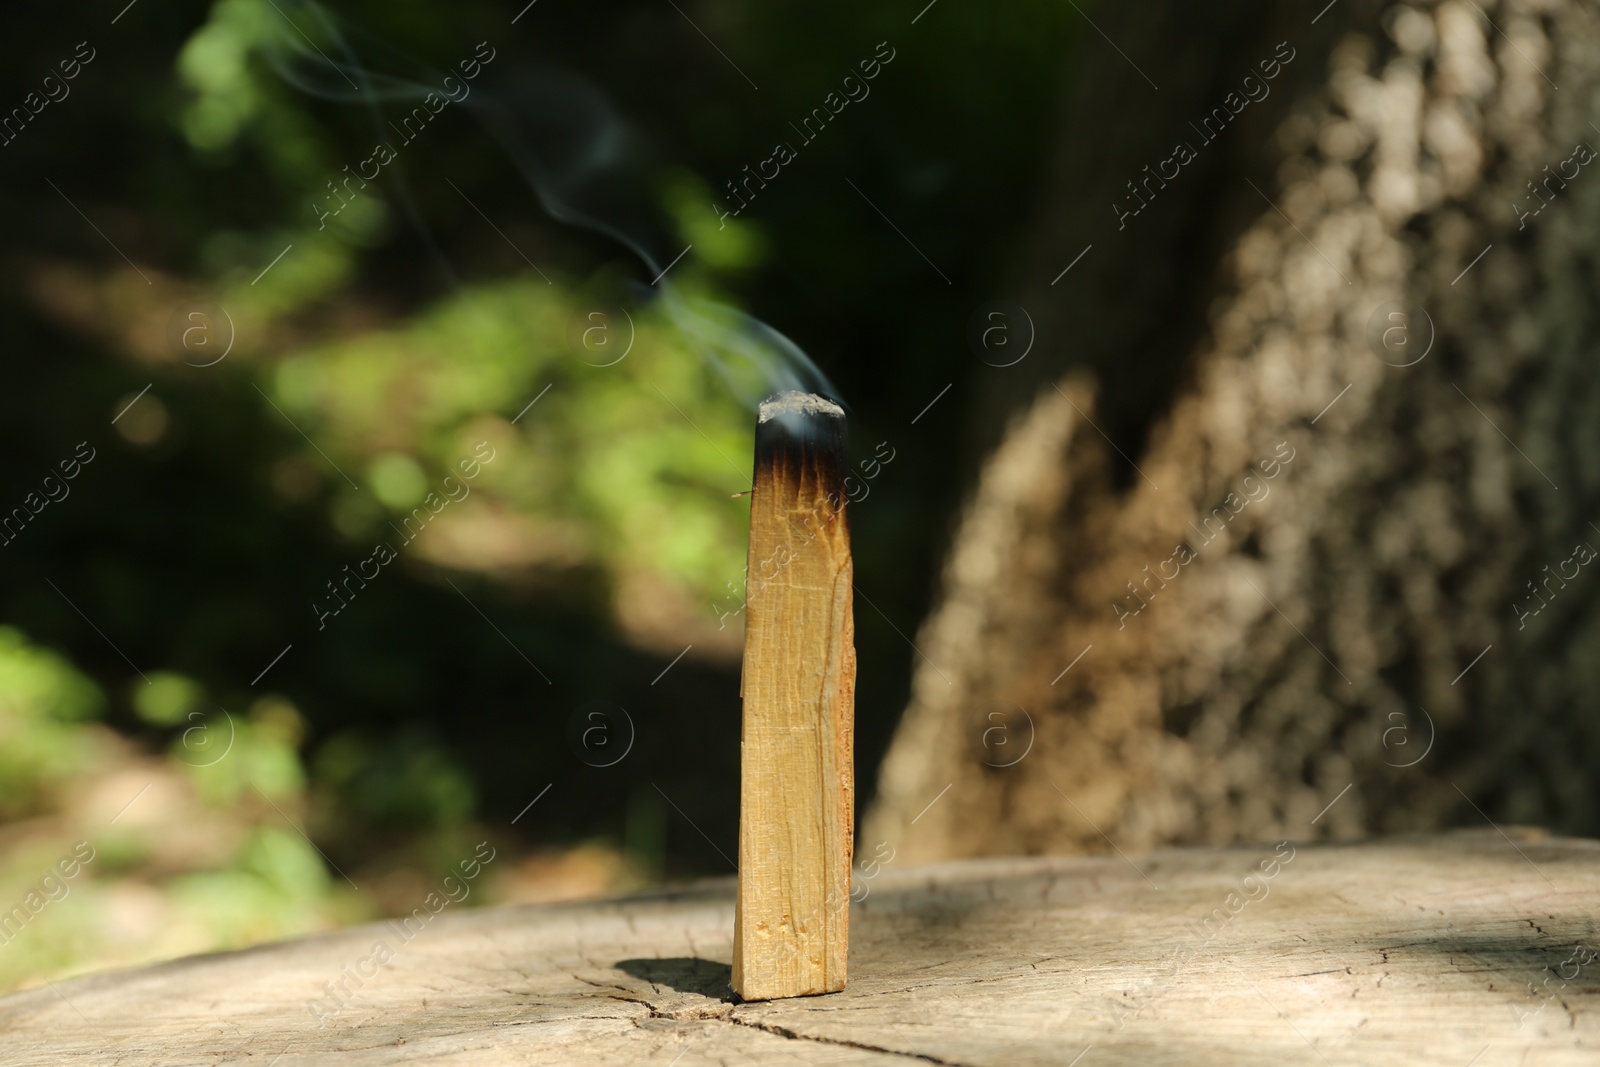 Photo of Smoldering palo santo stick on wooden stump outdoors